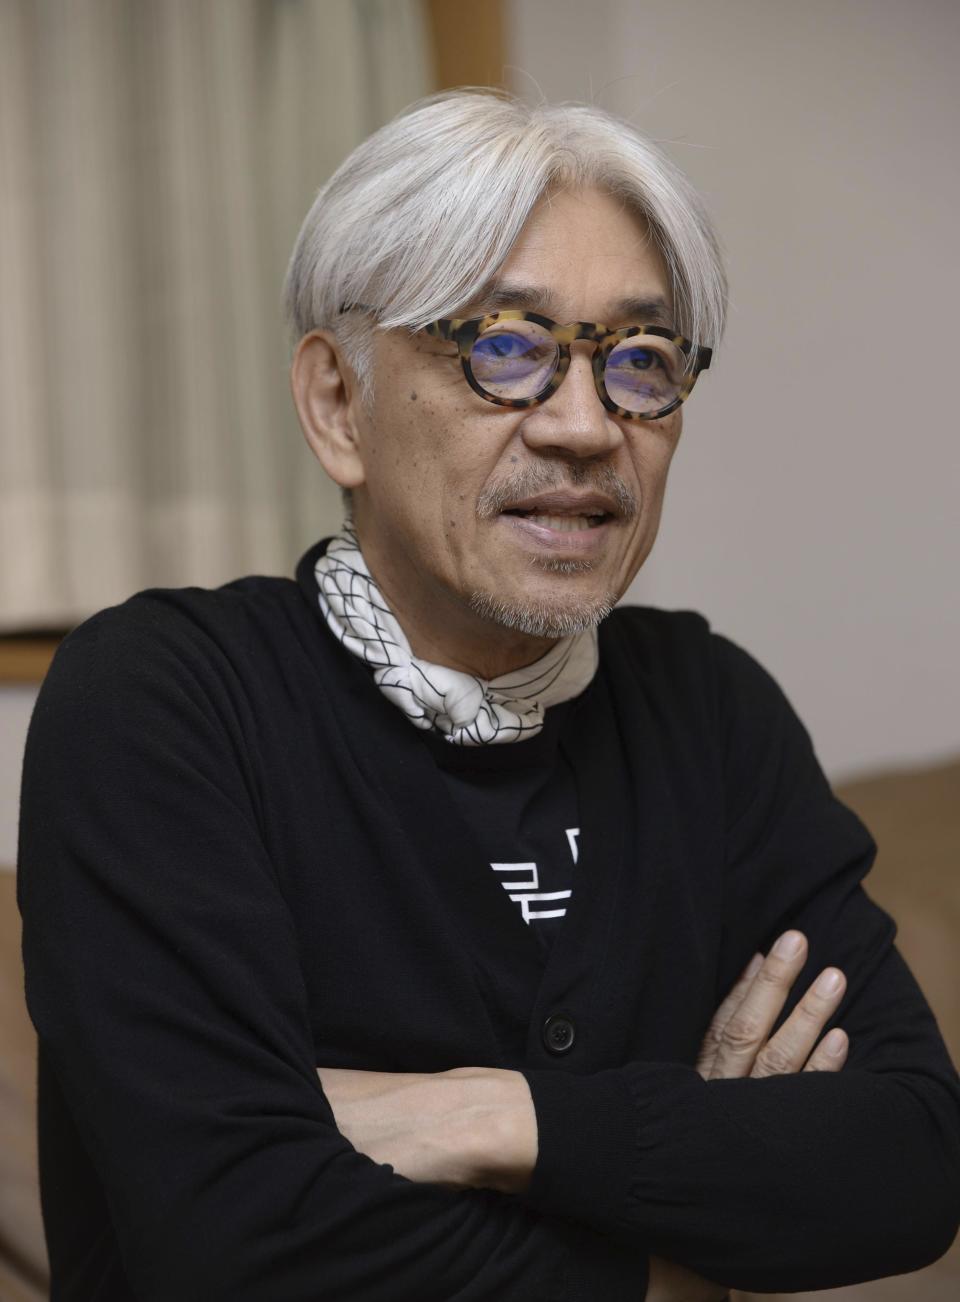 ARCHIVO - Ryuichi Sakamoto habla en una entrevista en Tokio, Japón, en marzo de 2017. La empresa discográfica japonesa Avex dijo que Sakamoto, quien hizo la música de películas como "The Last Emperor" y "The Revenant", ha muerto. Tenía 71 años. Falleció el 28 de marzo de acuerdo con un comunicado enviado el 2 de abril de 2023. (Kyodo News vía AP)